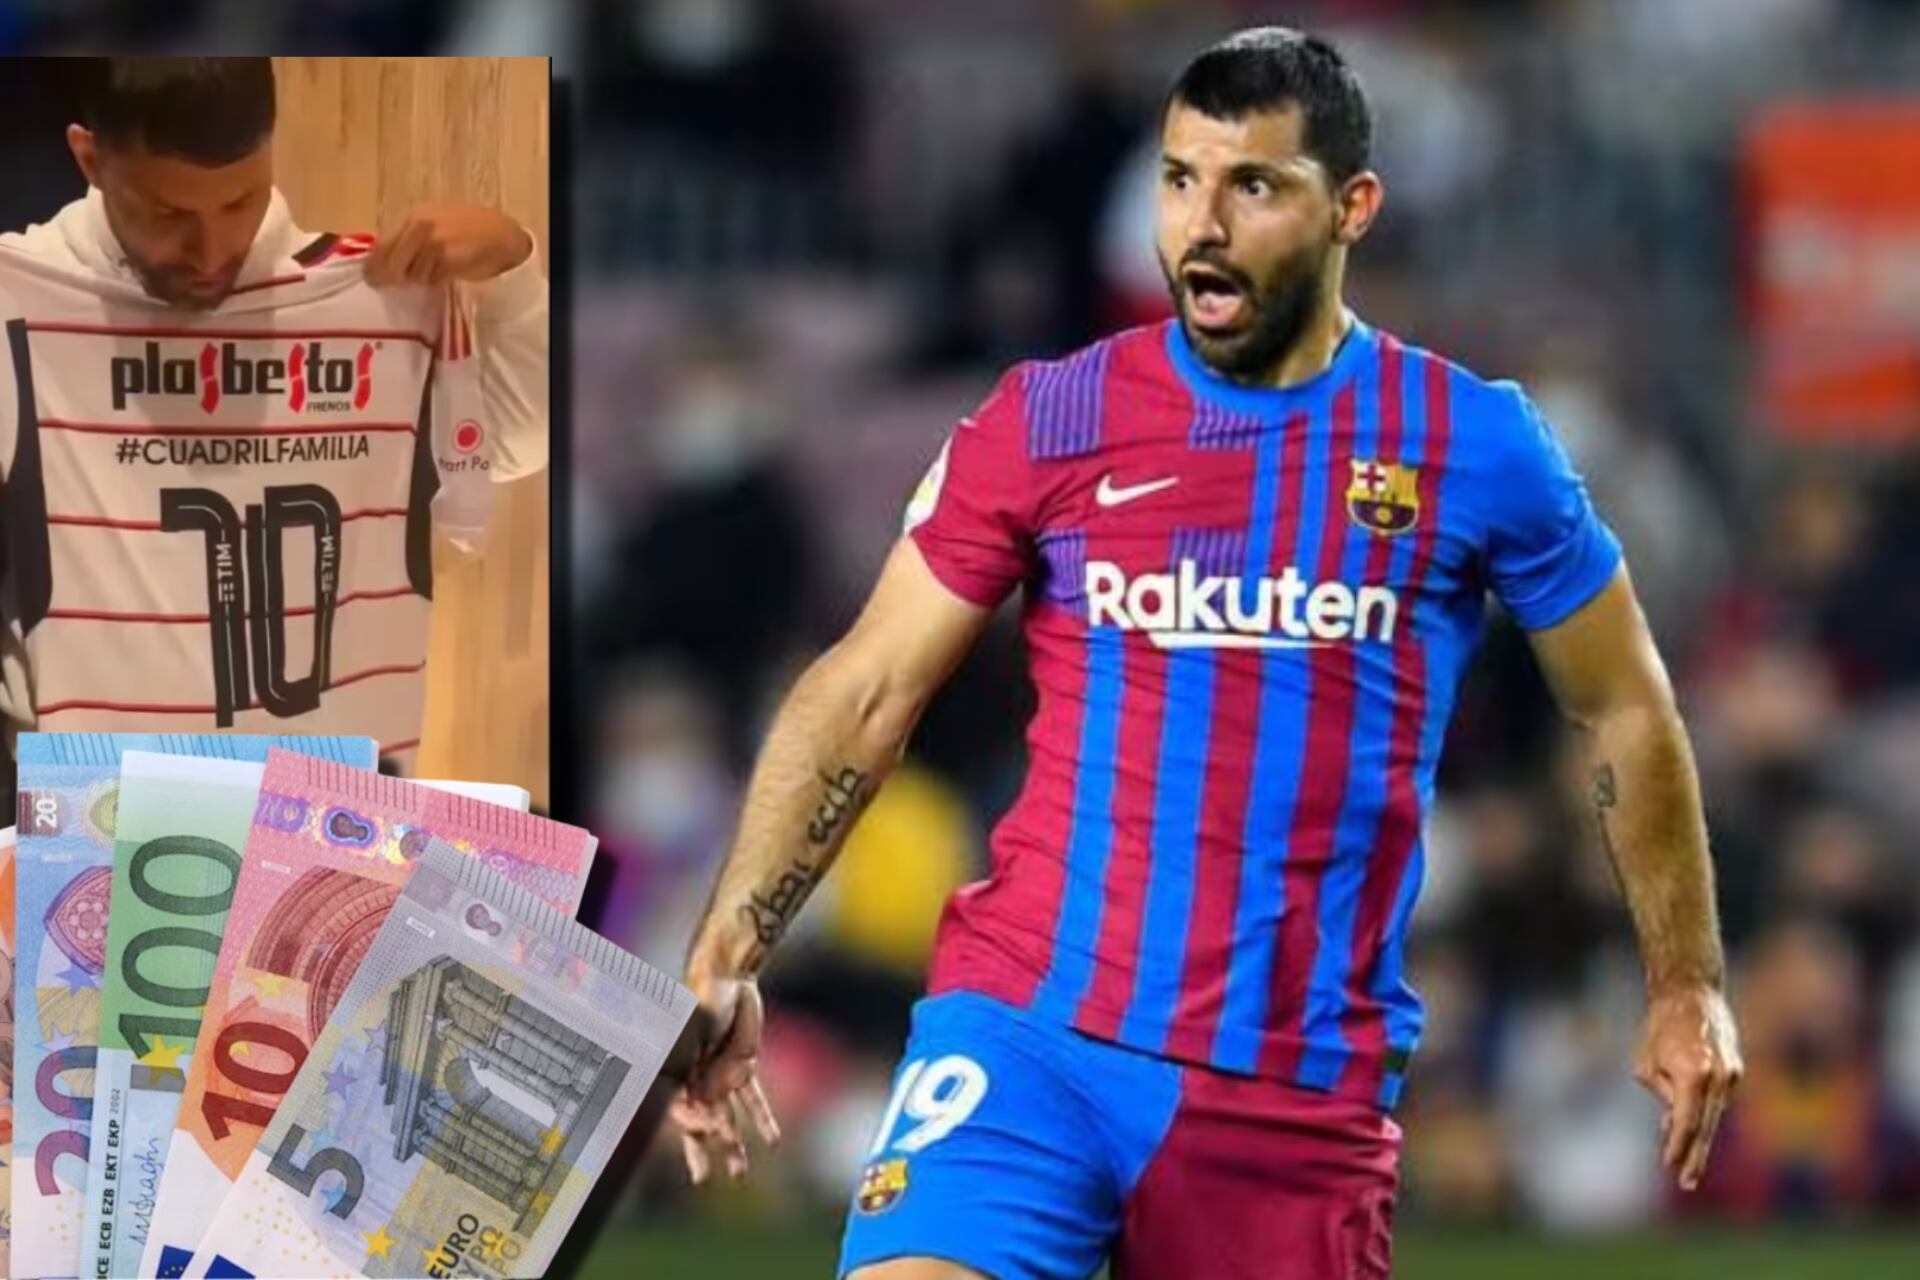 Mientras en Barça ganó 12 millones, el sueldo de Agüero en su nuevo club amateur